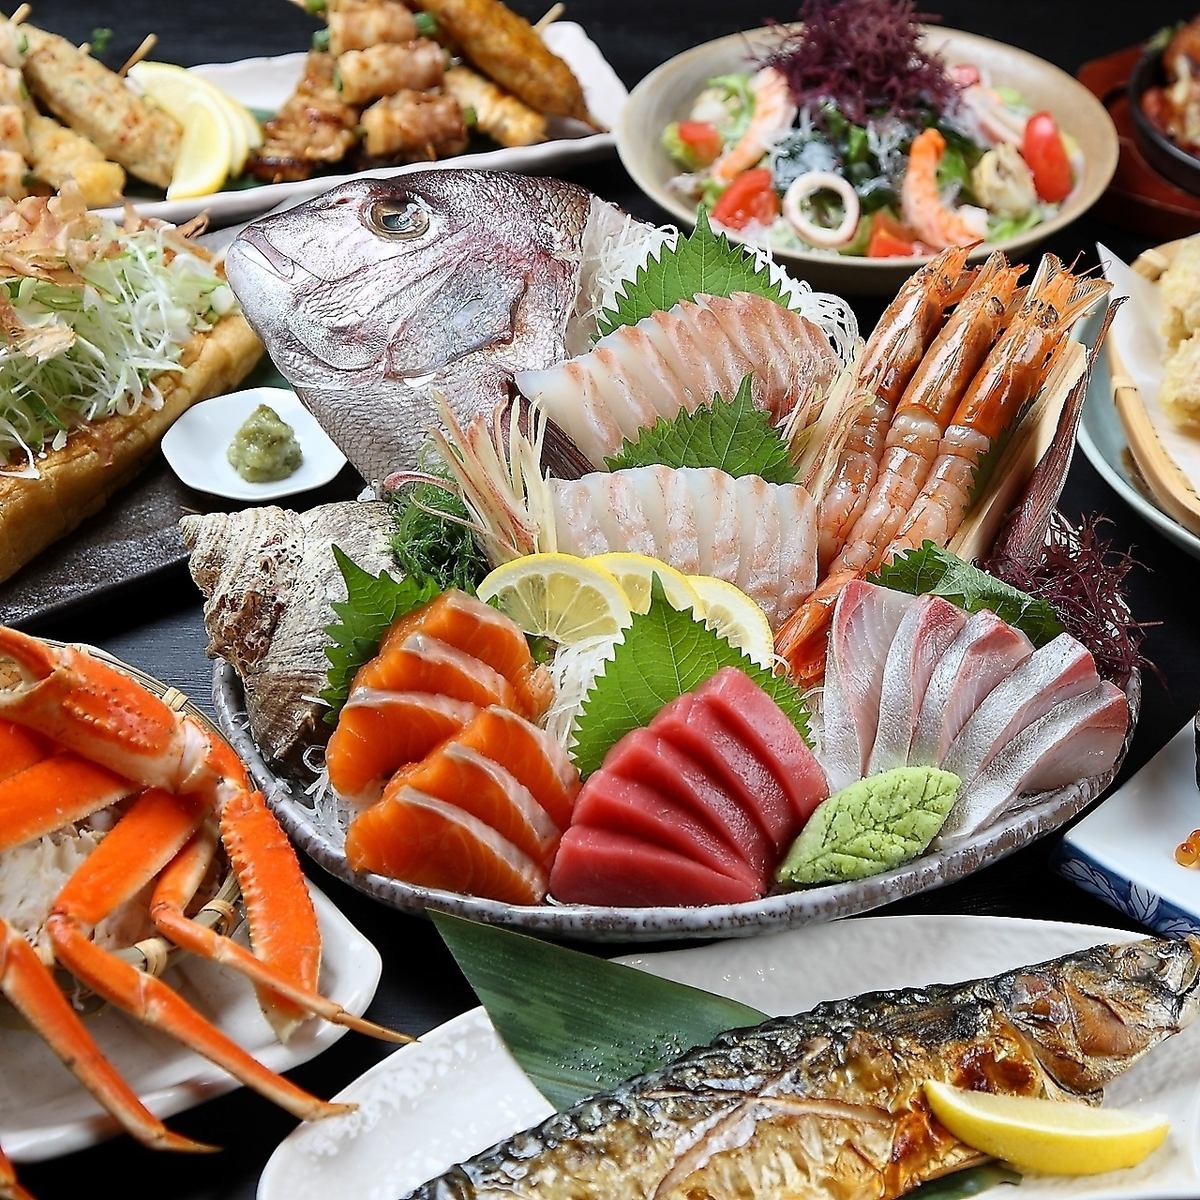 我们的特色菜是鲜鱼拼盘，注重新鲜度和品质。